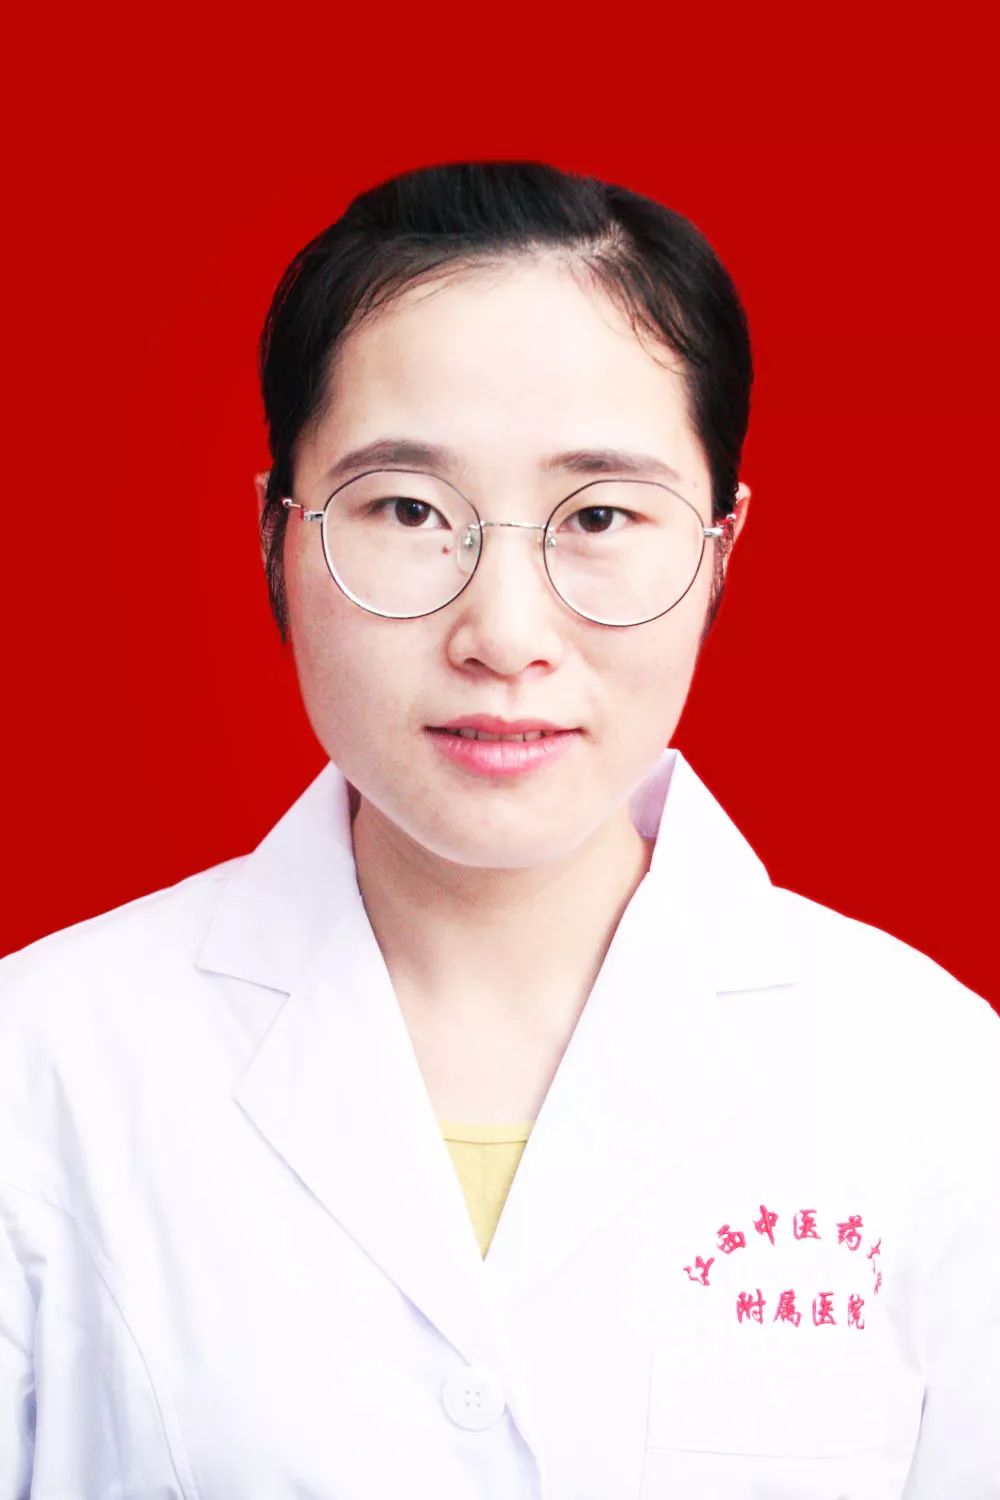 徐玲玲女,汉族,中医师,治疗师,本科毕业于江西中医药大学,针灸推拿